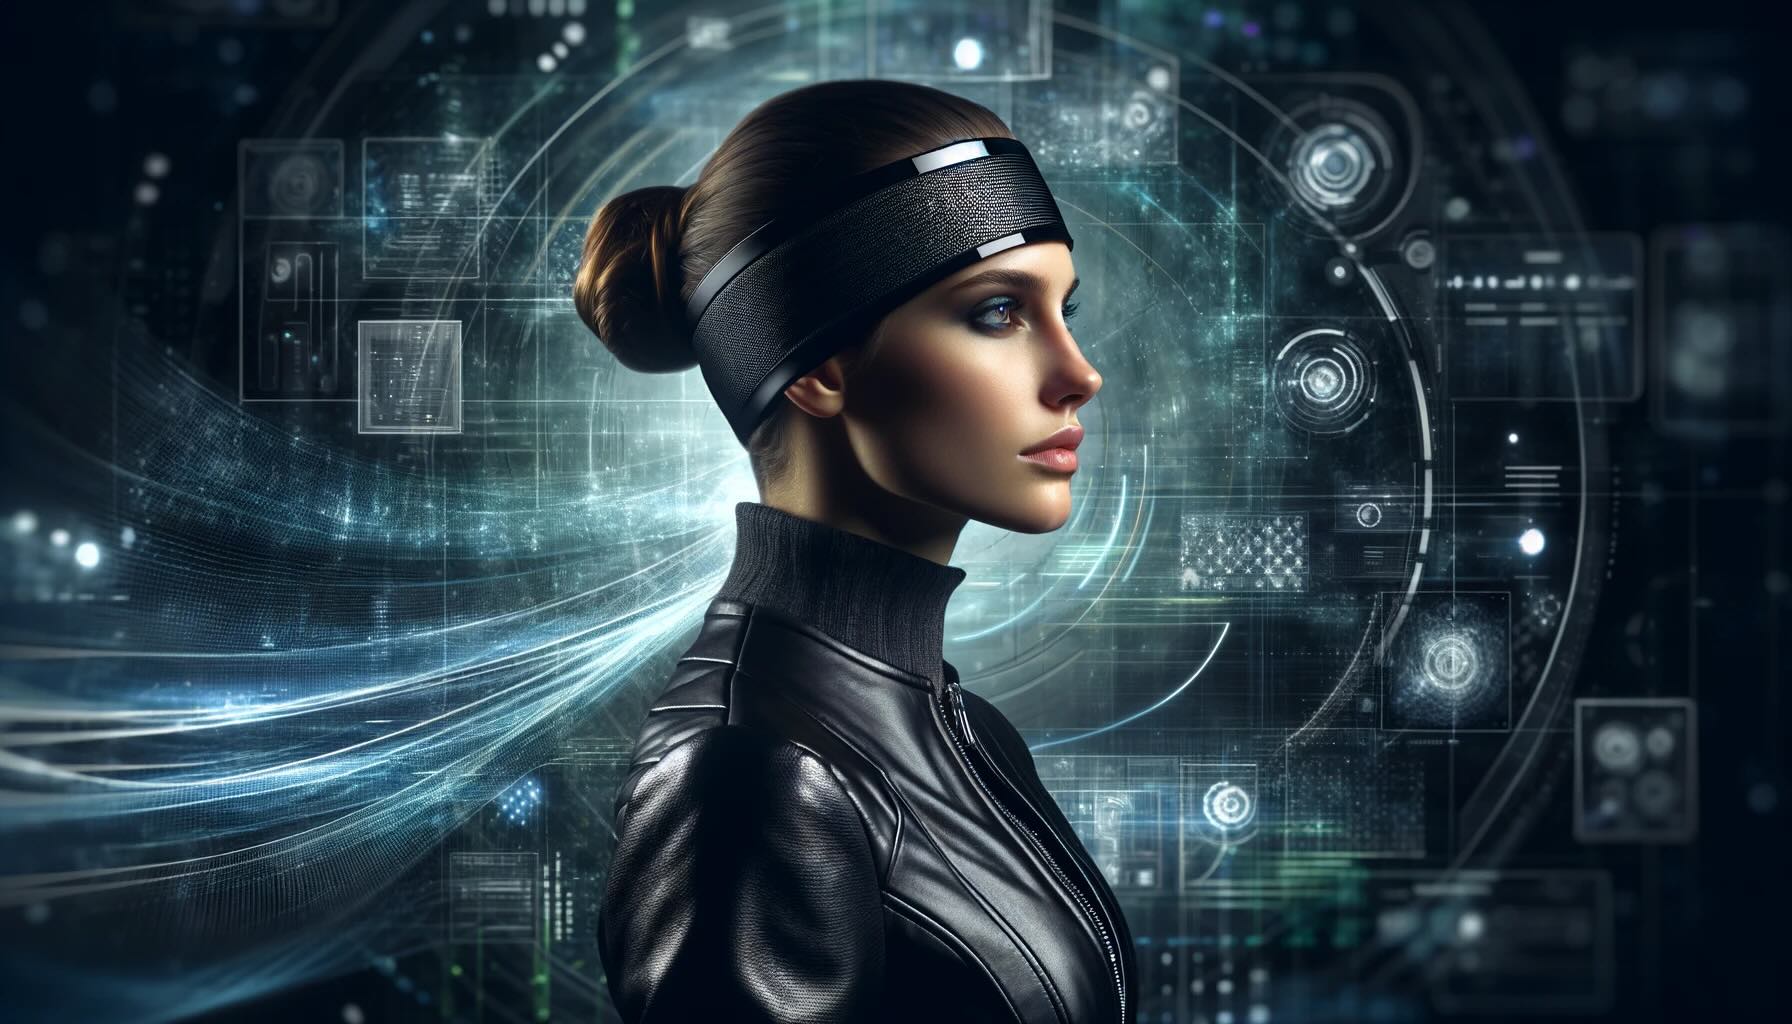 Kobieta w skórzanej kurtce z futurystyczną opaską na głowie stojąca na tle cyfrowych interfejsów i hologramów.